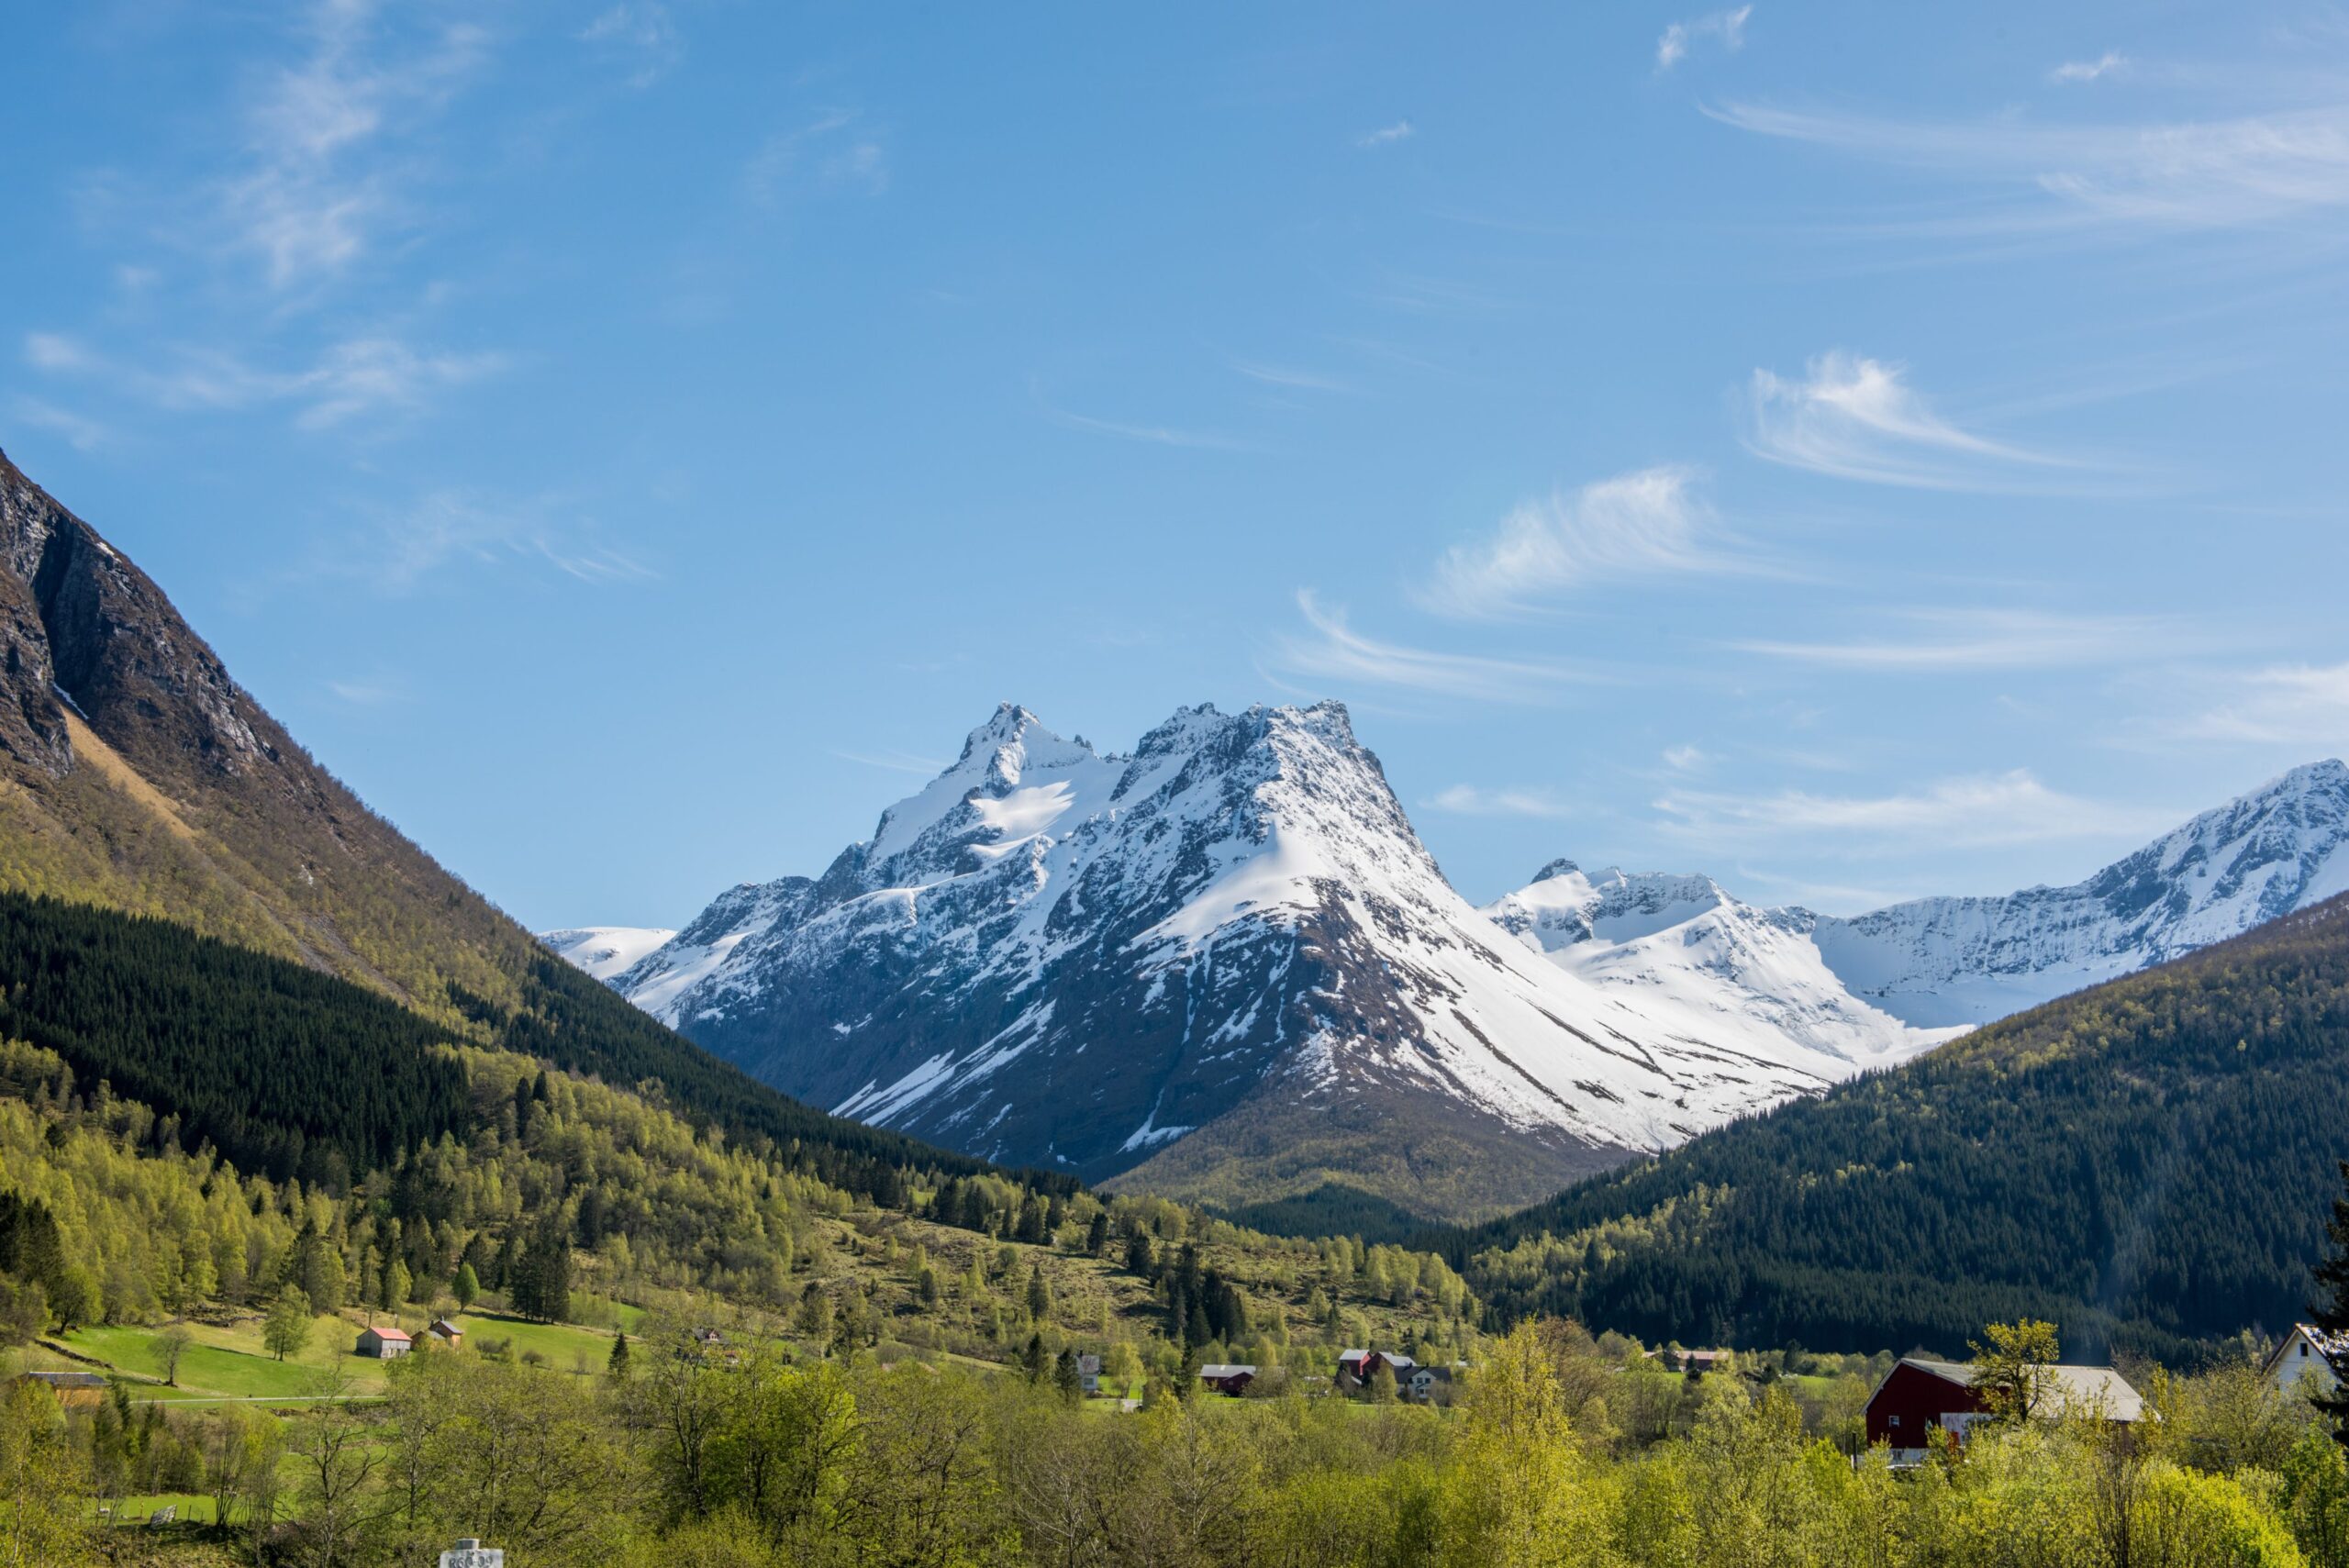 Felssturzmonitoring im Hochgebirge – Mit Messtechnik der Naturgefahr auf der Spur